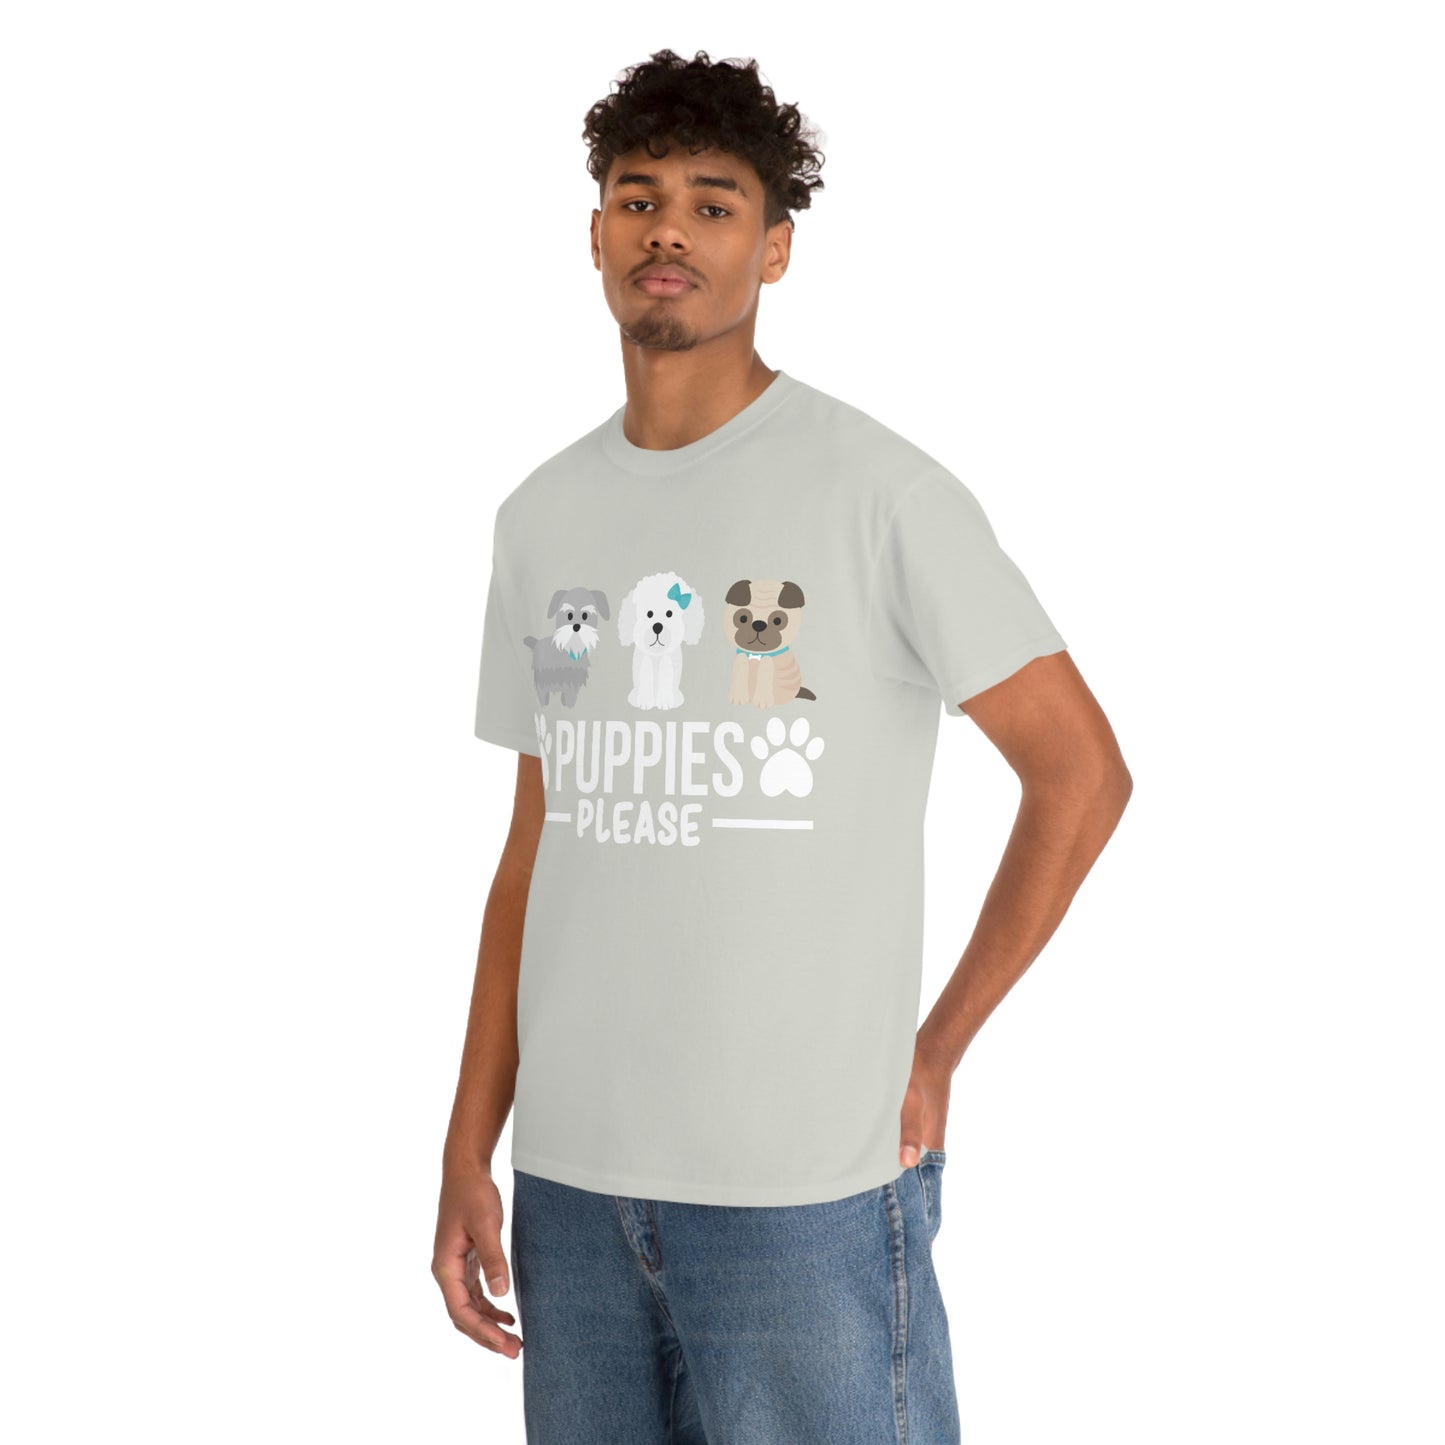 Cachorros por favor camiseta de algodón